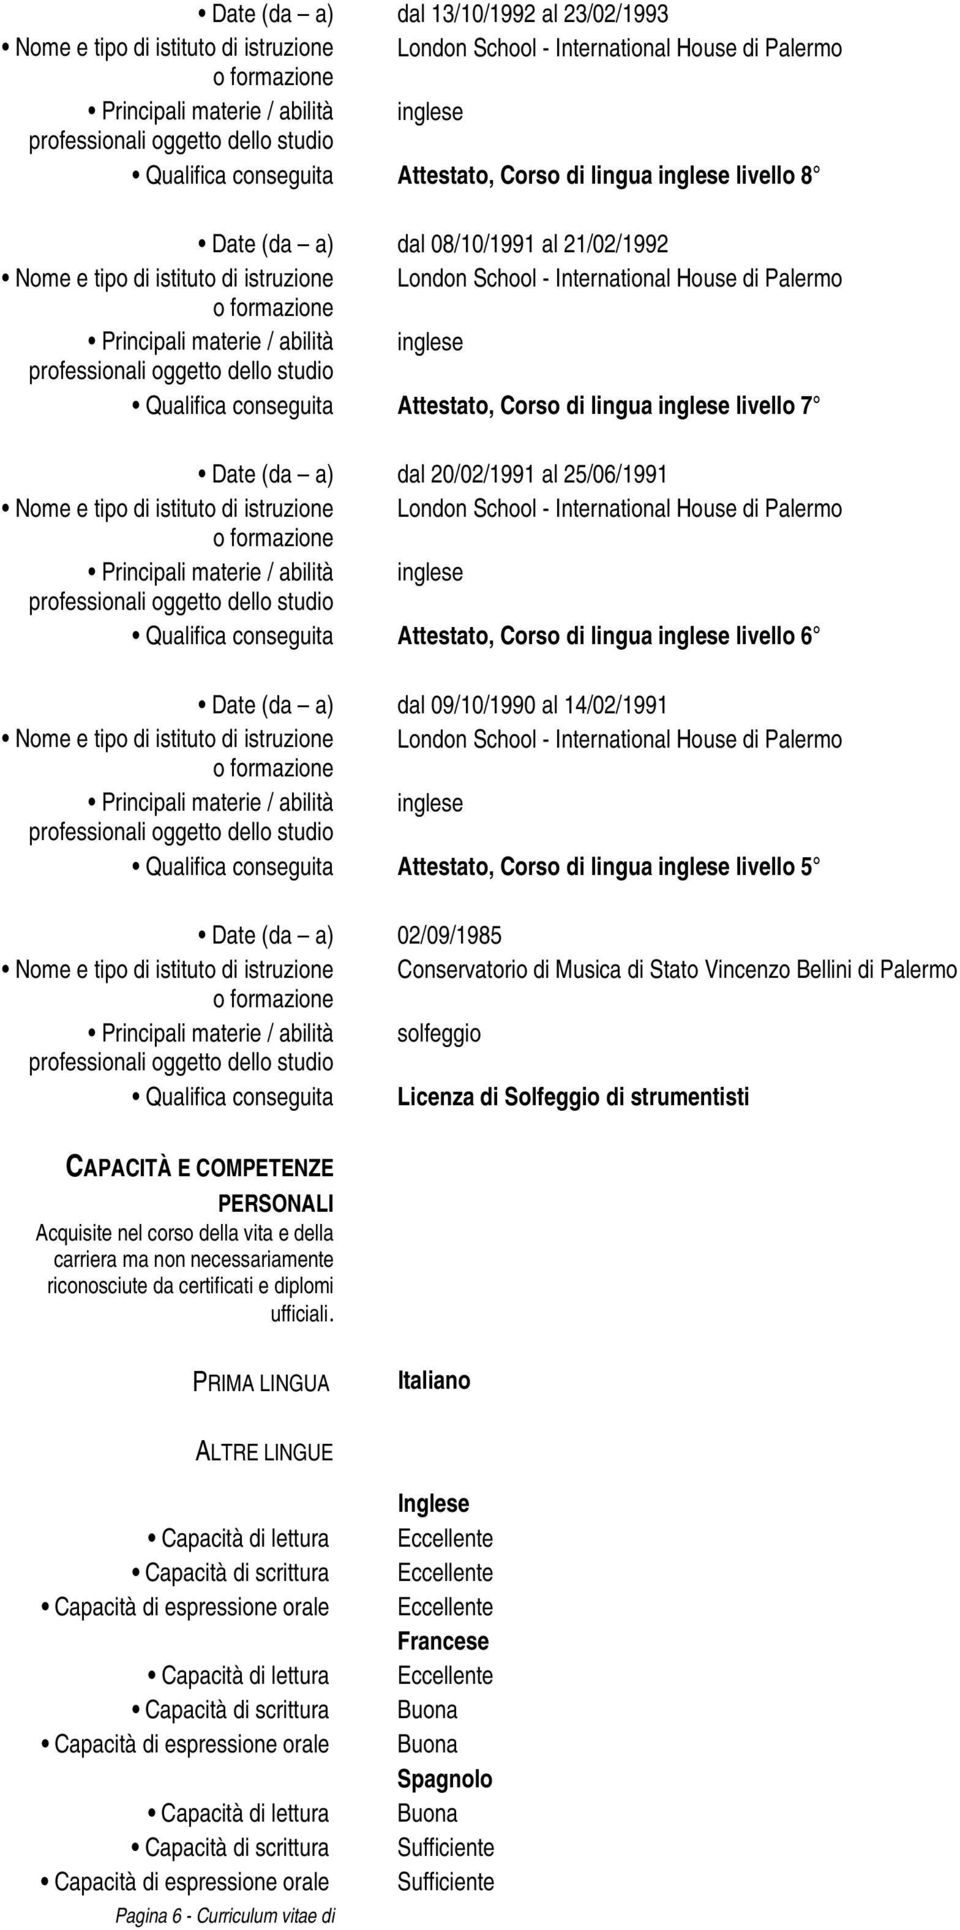 Corso di lingua inglese livello 5 Date (da a) 02/09/1985 Nome e tipo di istituto di istruzione Conservatorio di Musica di Stato Vincenzo Bellini di Palermo Principali materie / abilità solfeggio